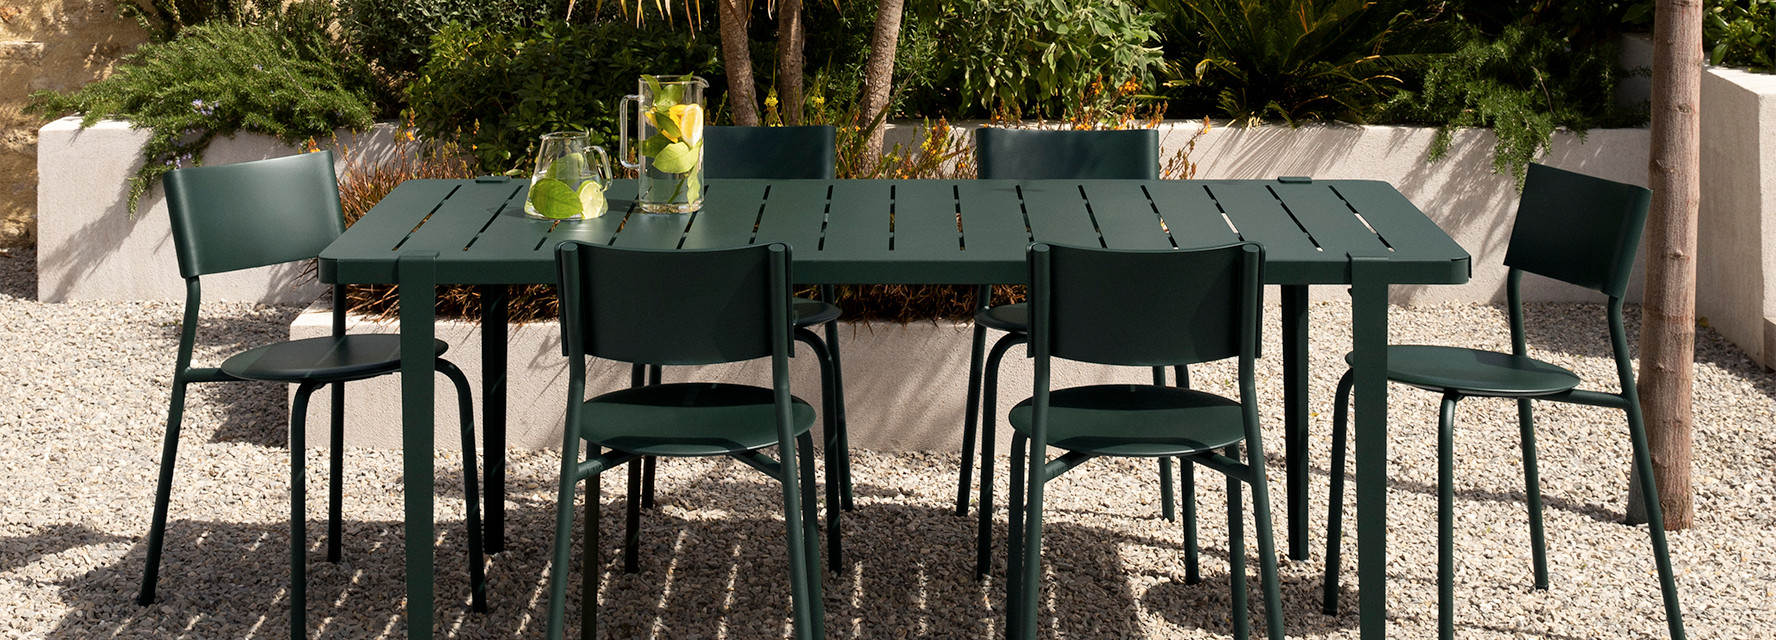 Table et chaise de jardin : place à la convivialité en extérieur !